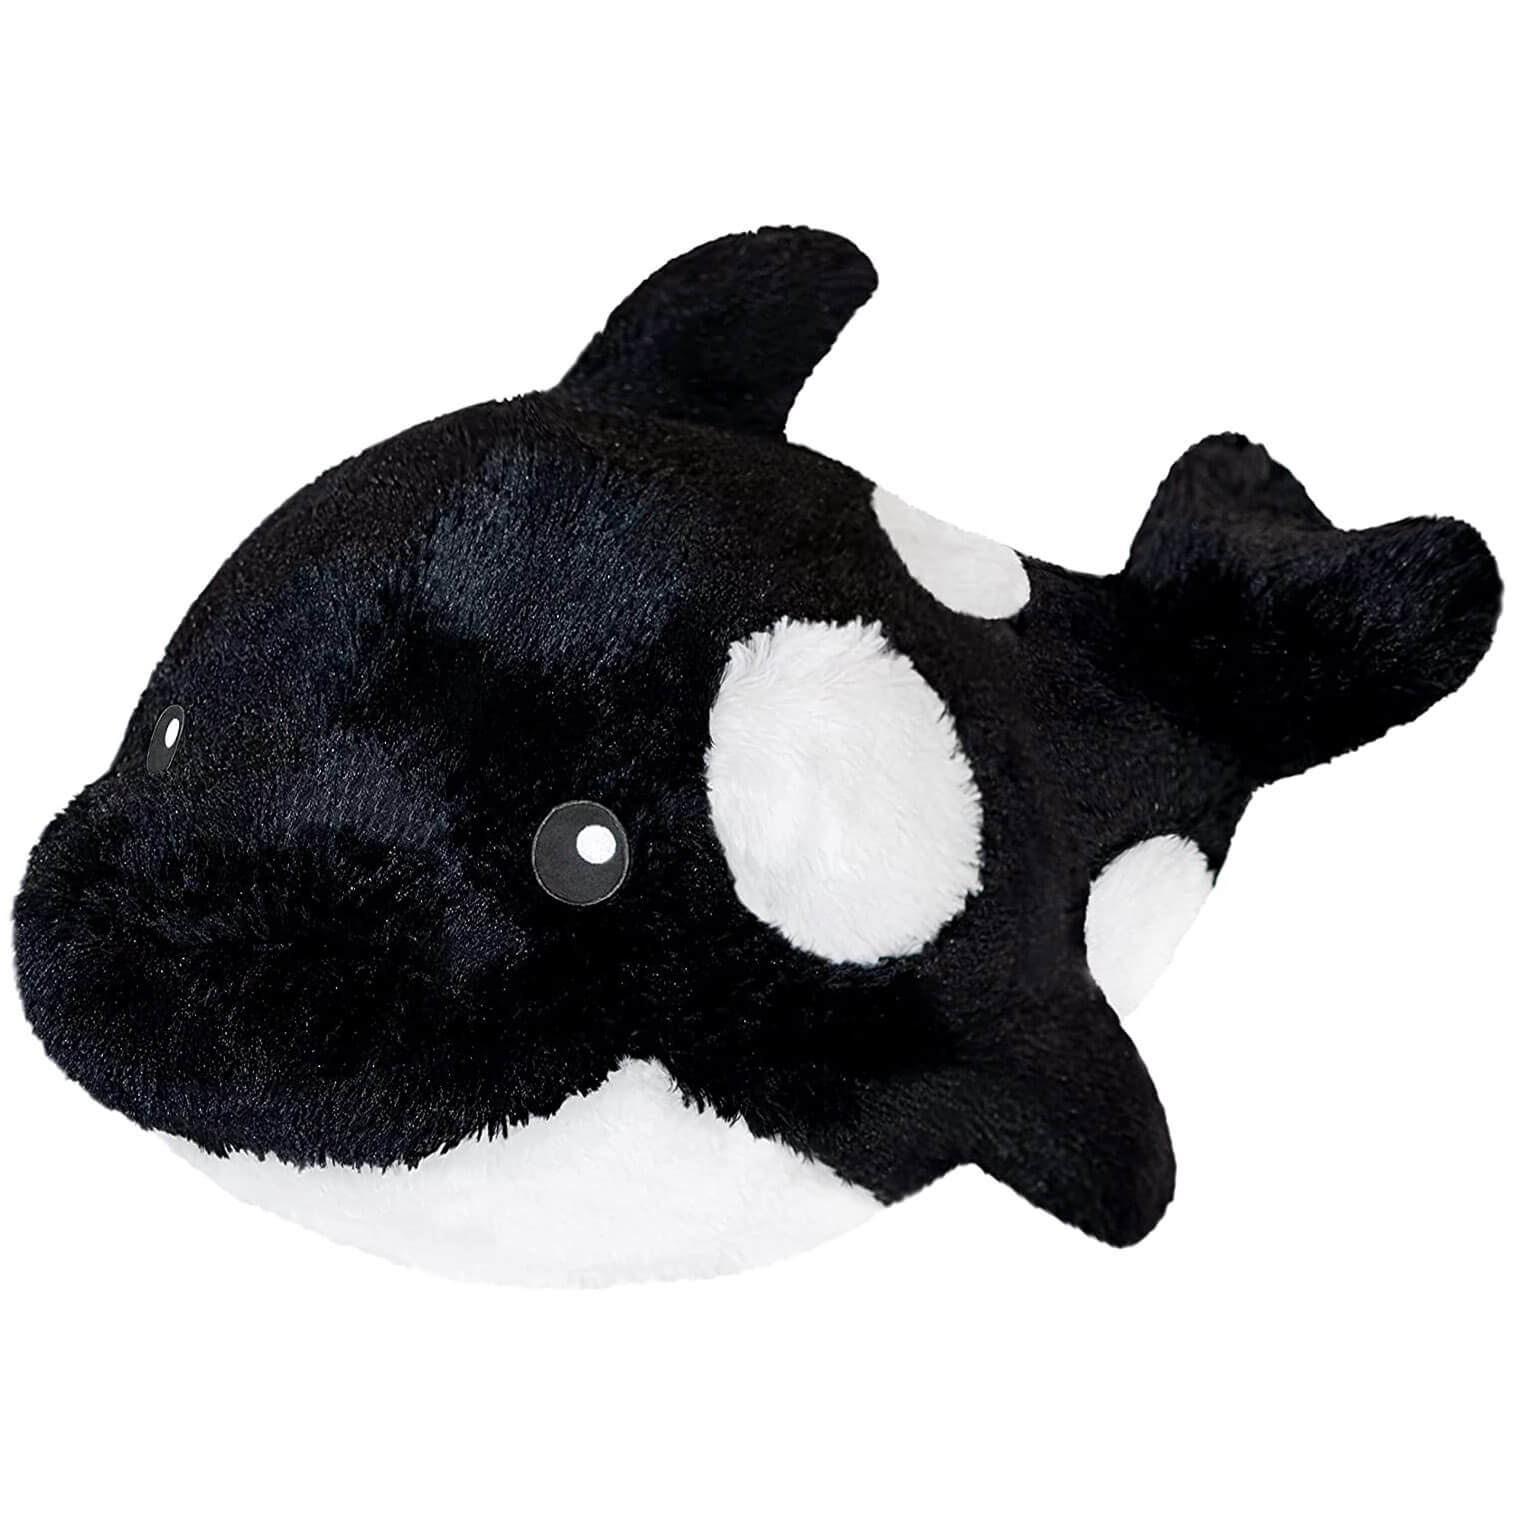 Squishable Orca II Plush